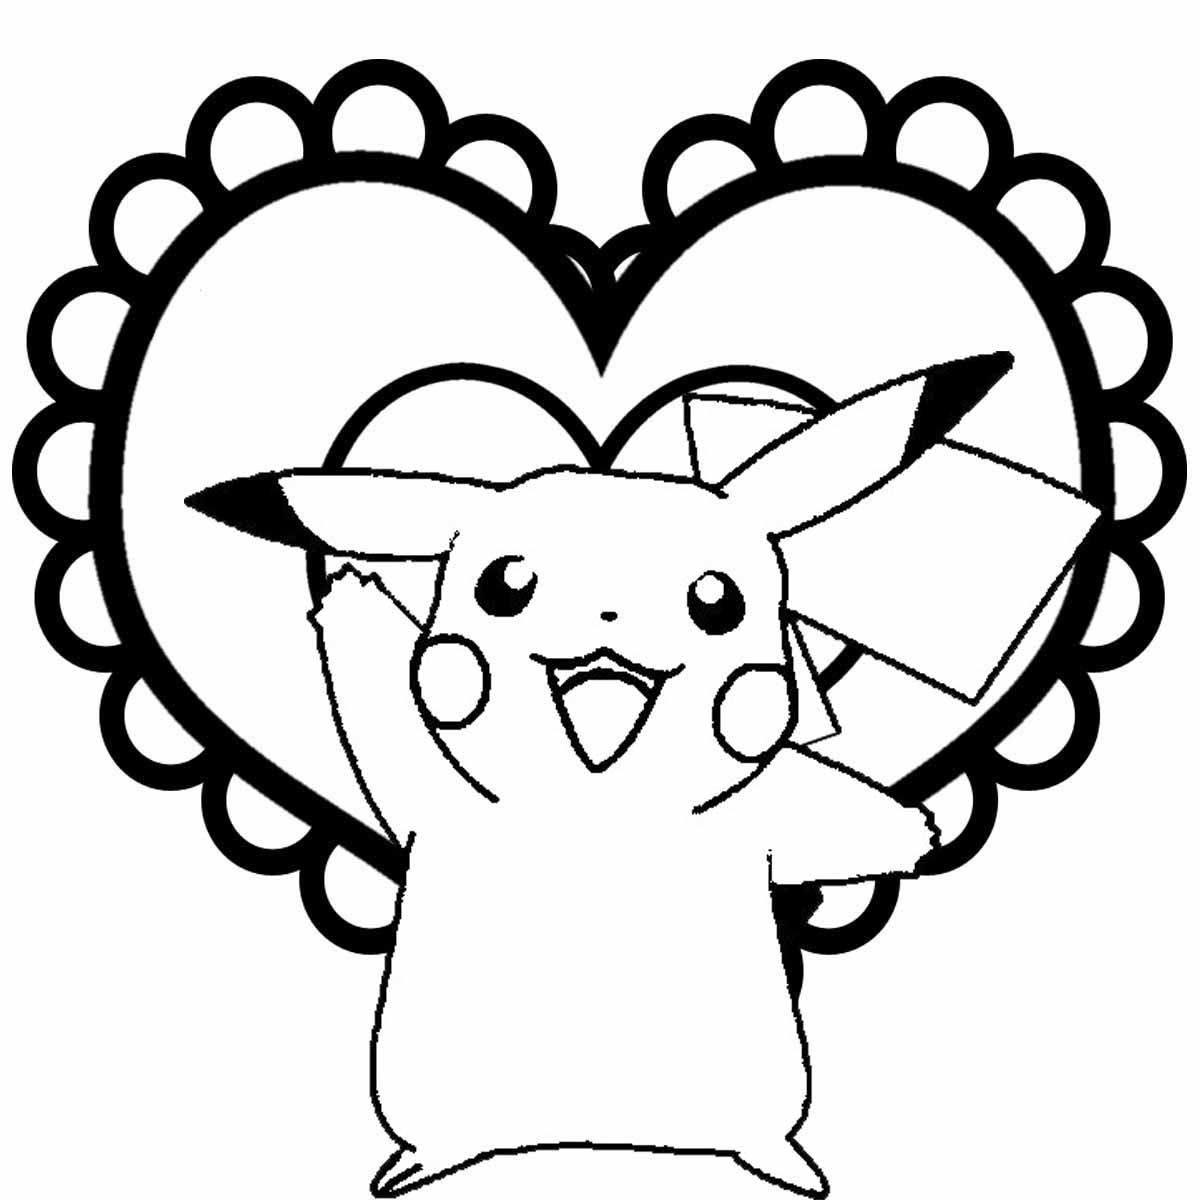 Joli coloriage simple de Pikachu devant un joli coeur